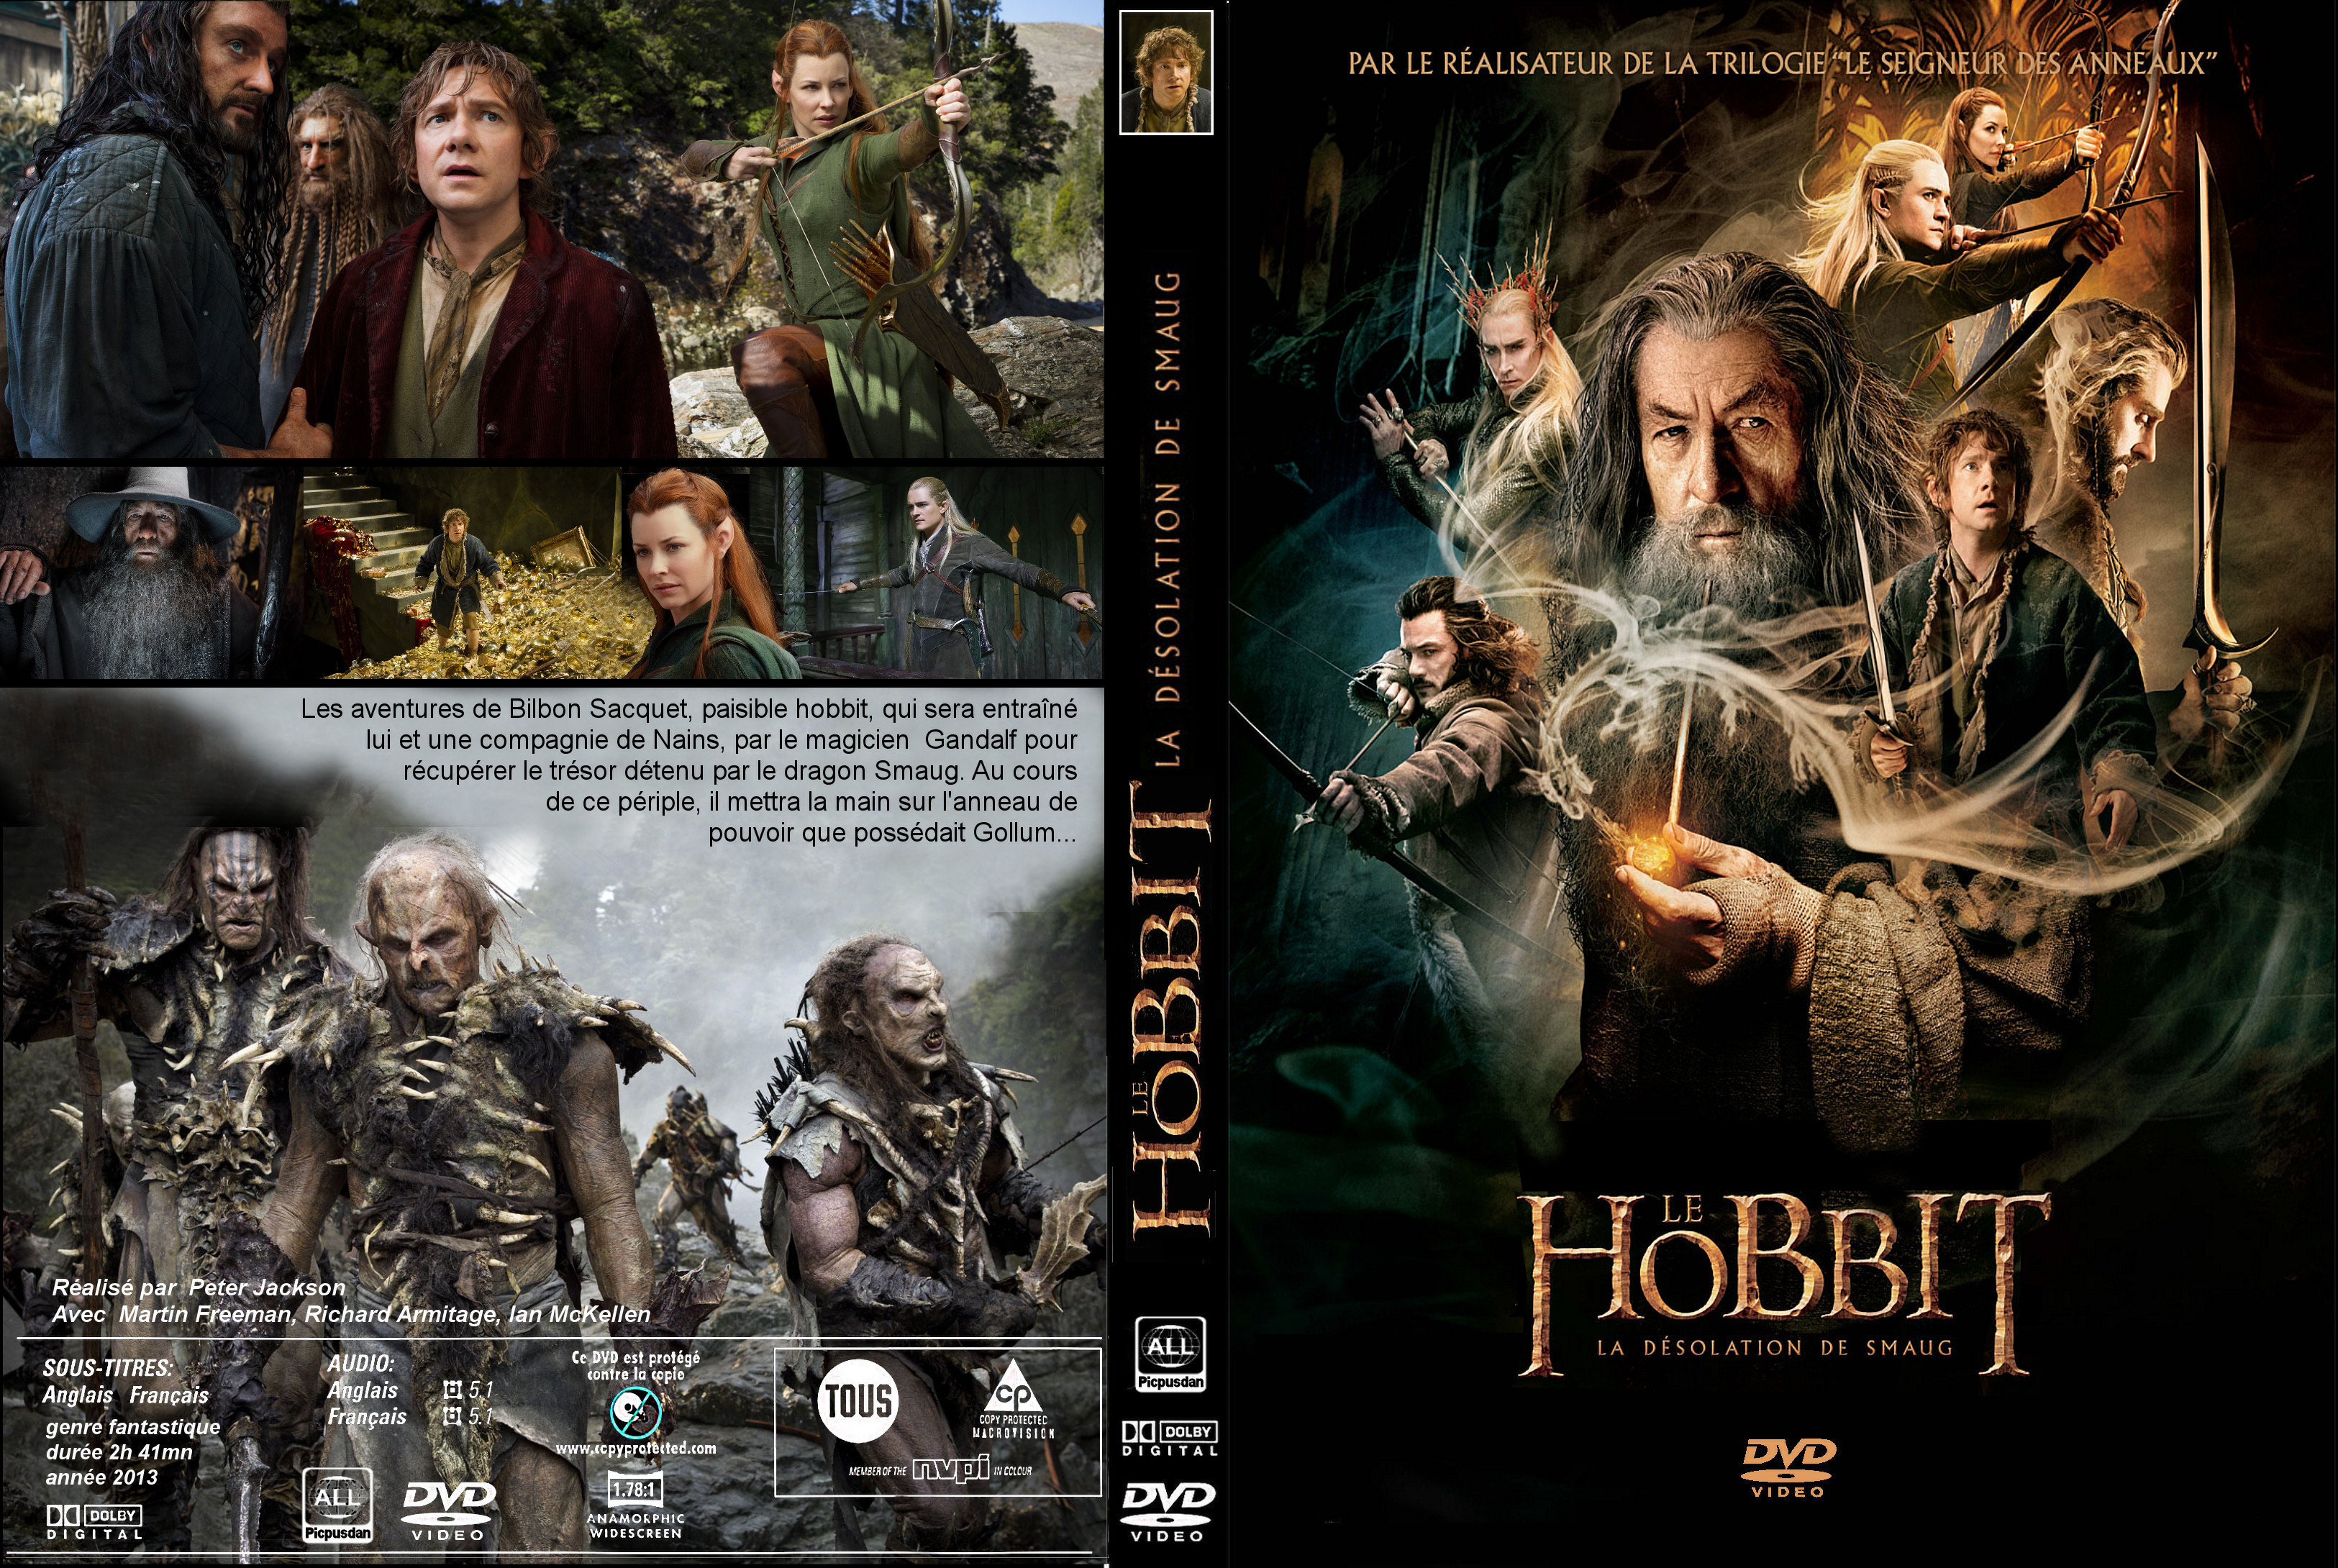 Jaquette DVD Le Hobbit la Dsolation de Smaug custom